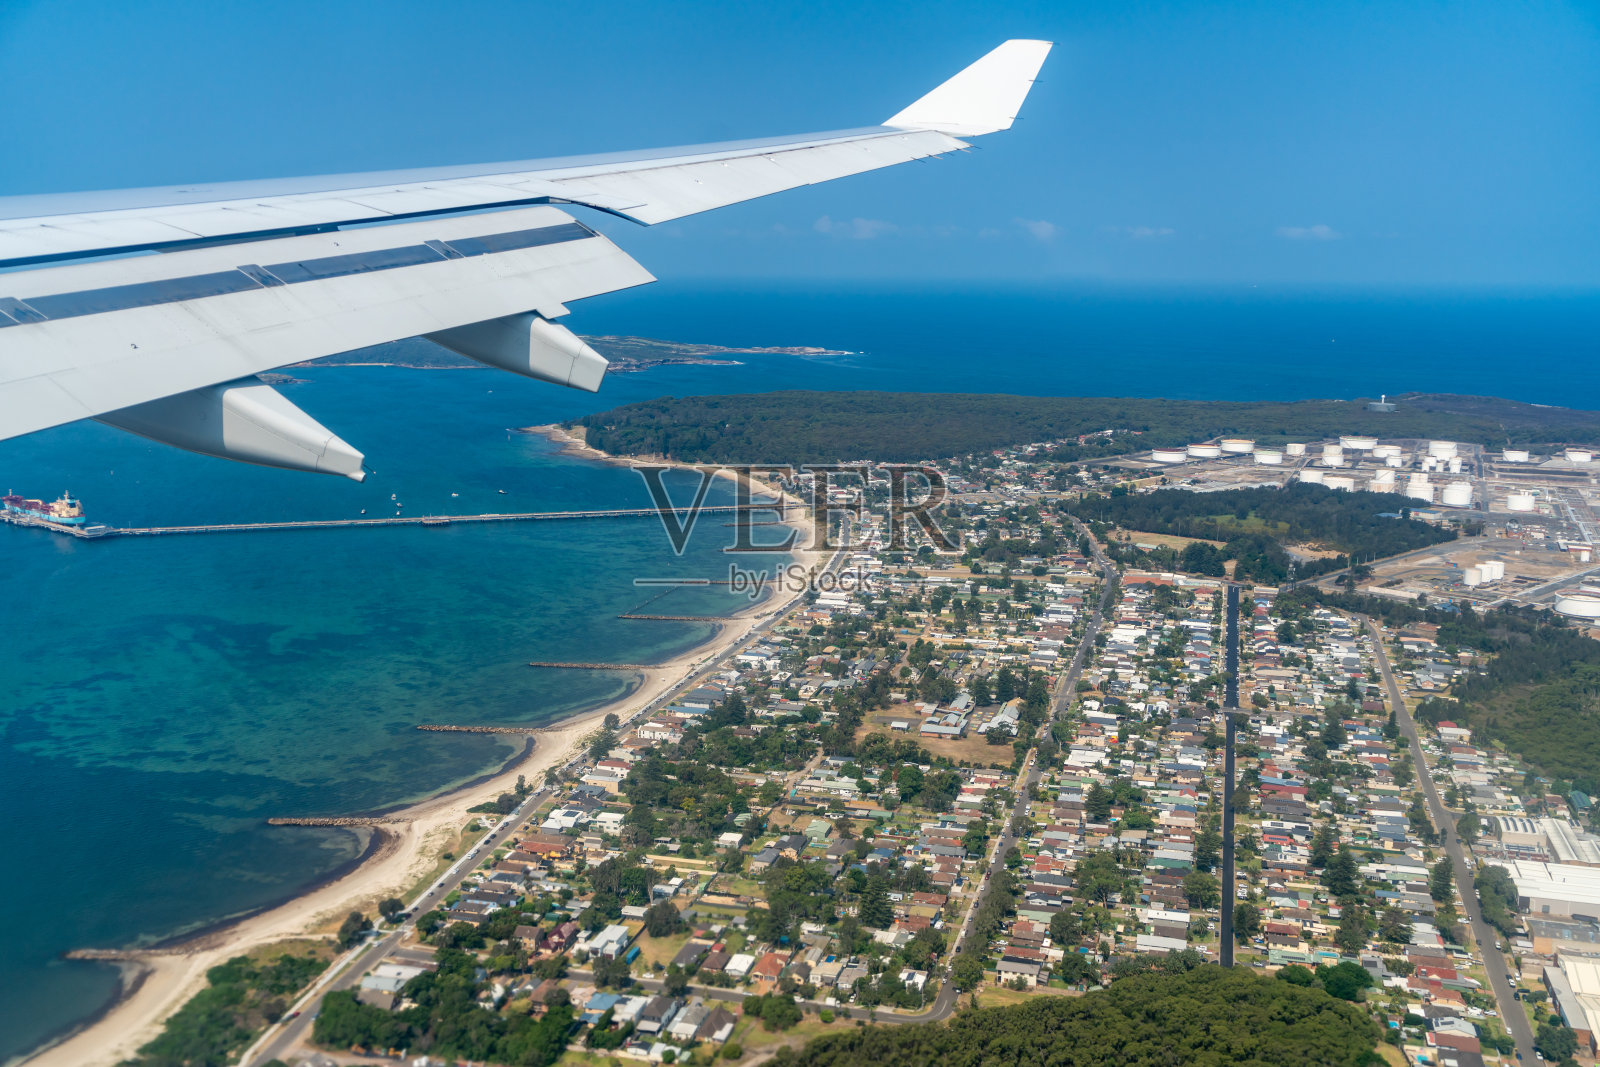 澳大利亚新南威尔士州的喷气式飞机鸟瞰悉尼照片摄影图片